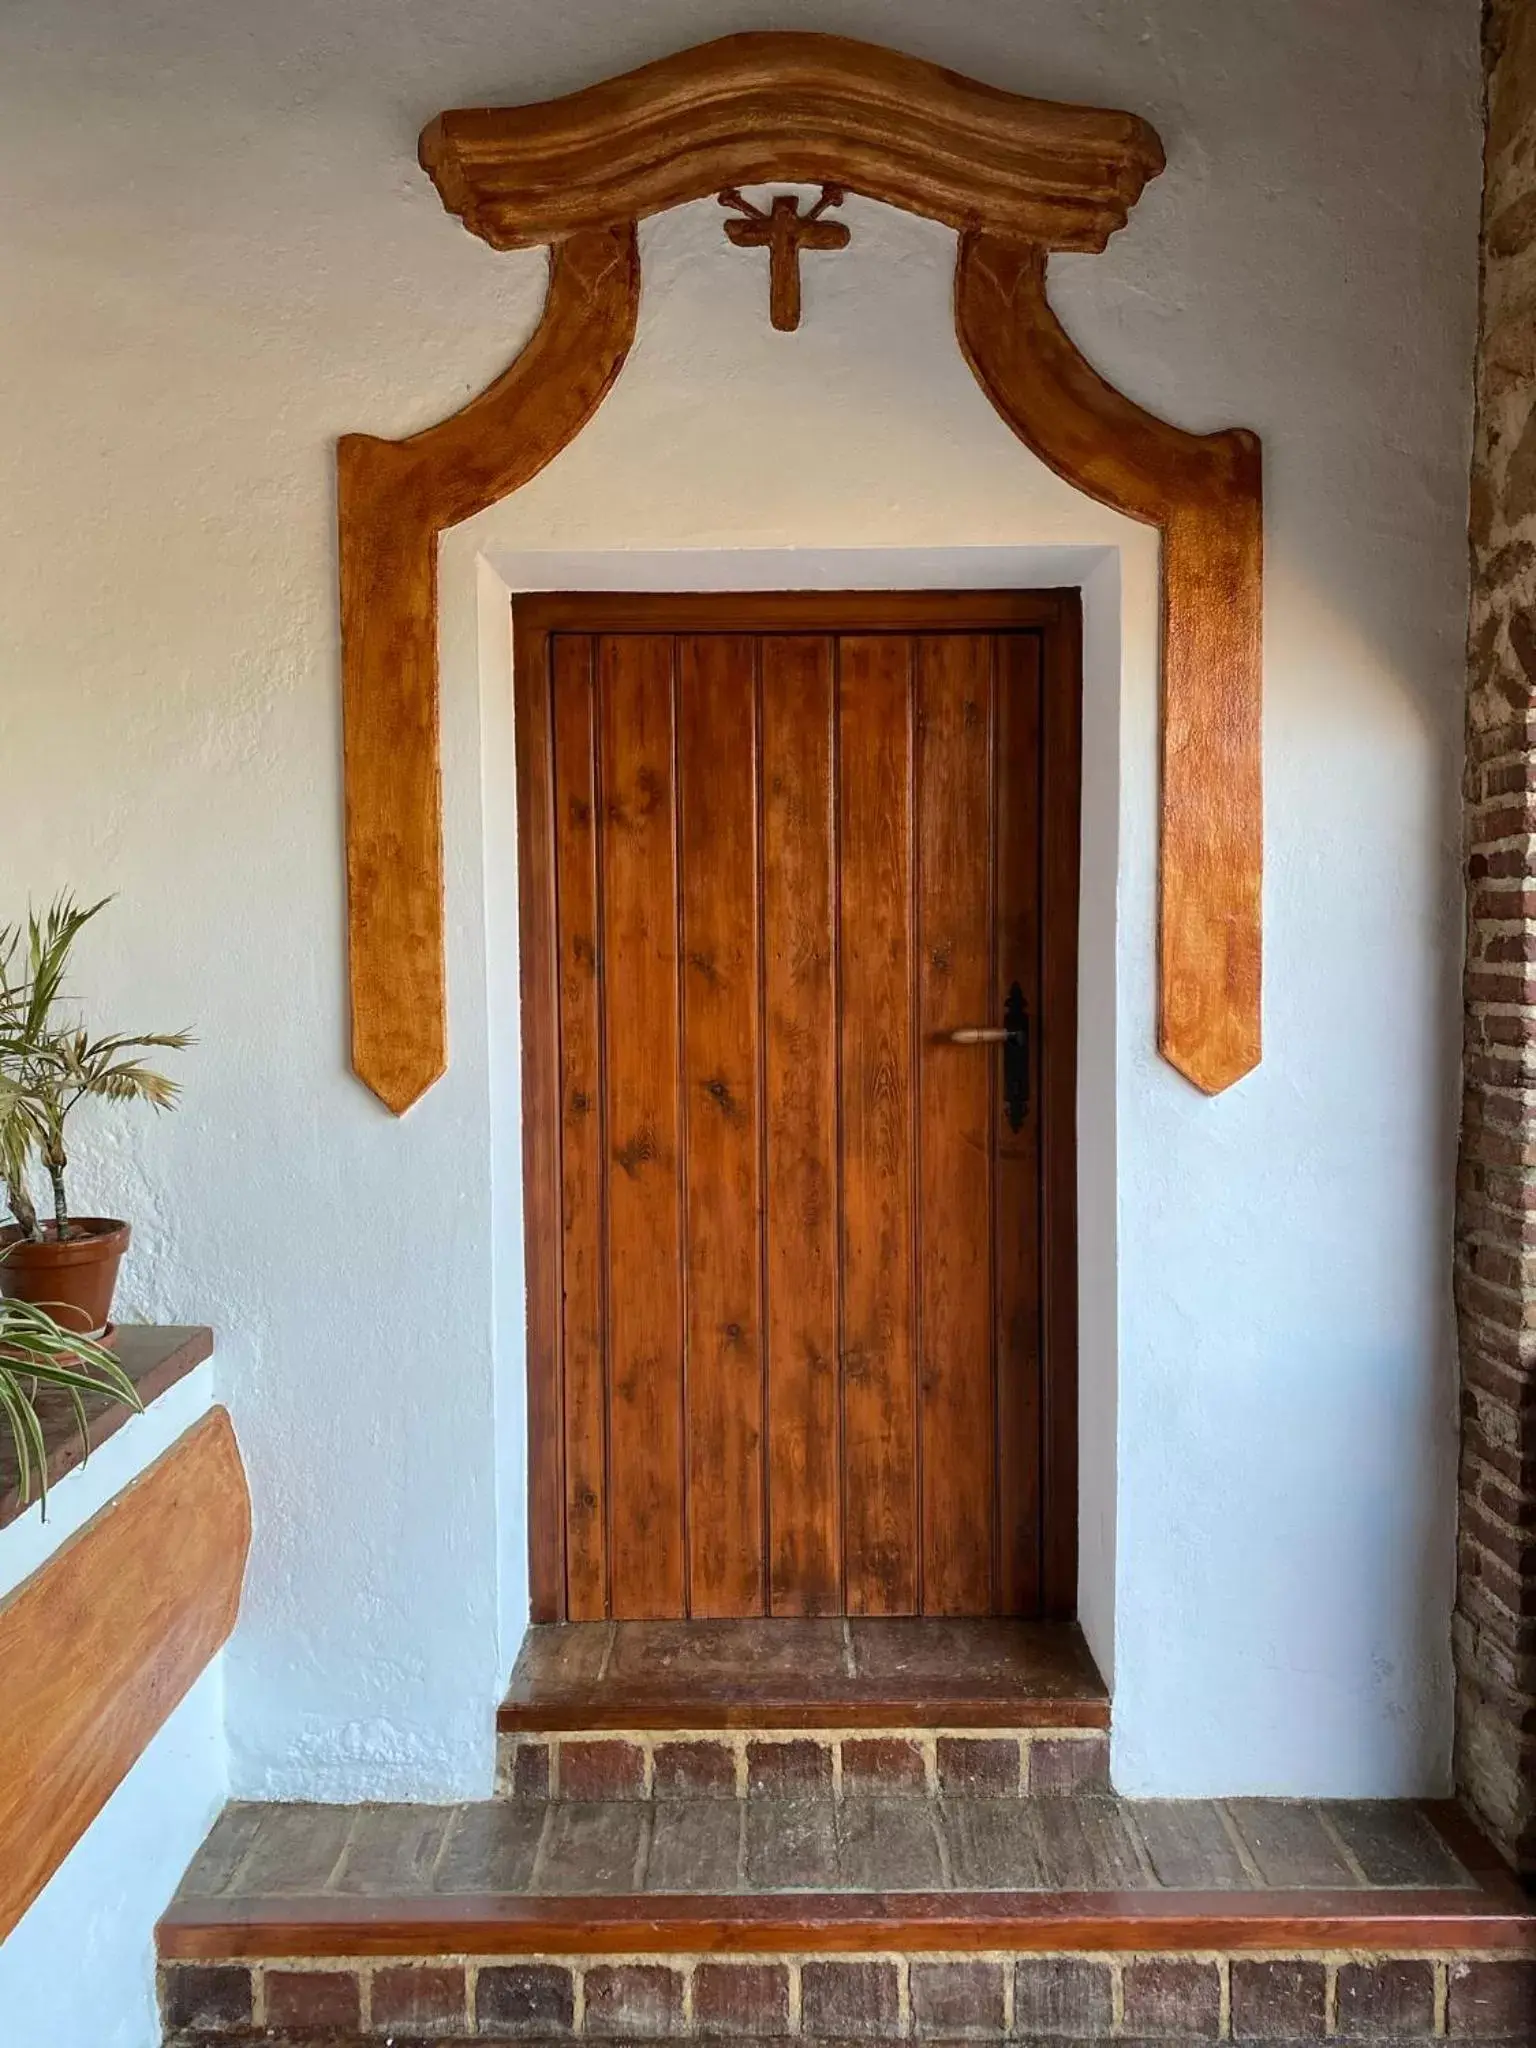 Off site, Facade/Entrance in Hotel Monasterio de Rocamador